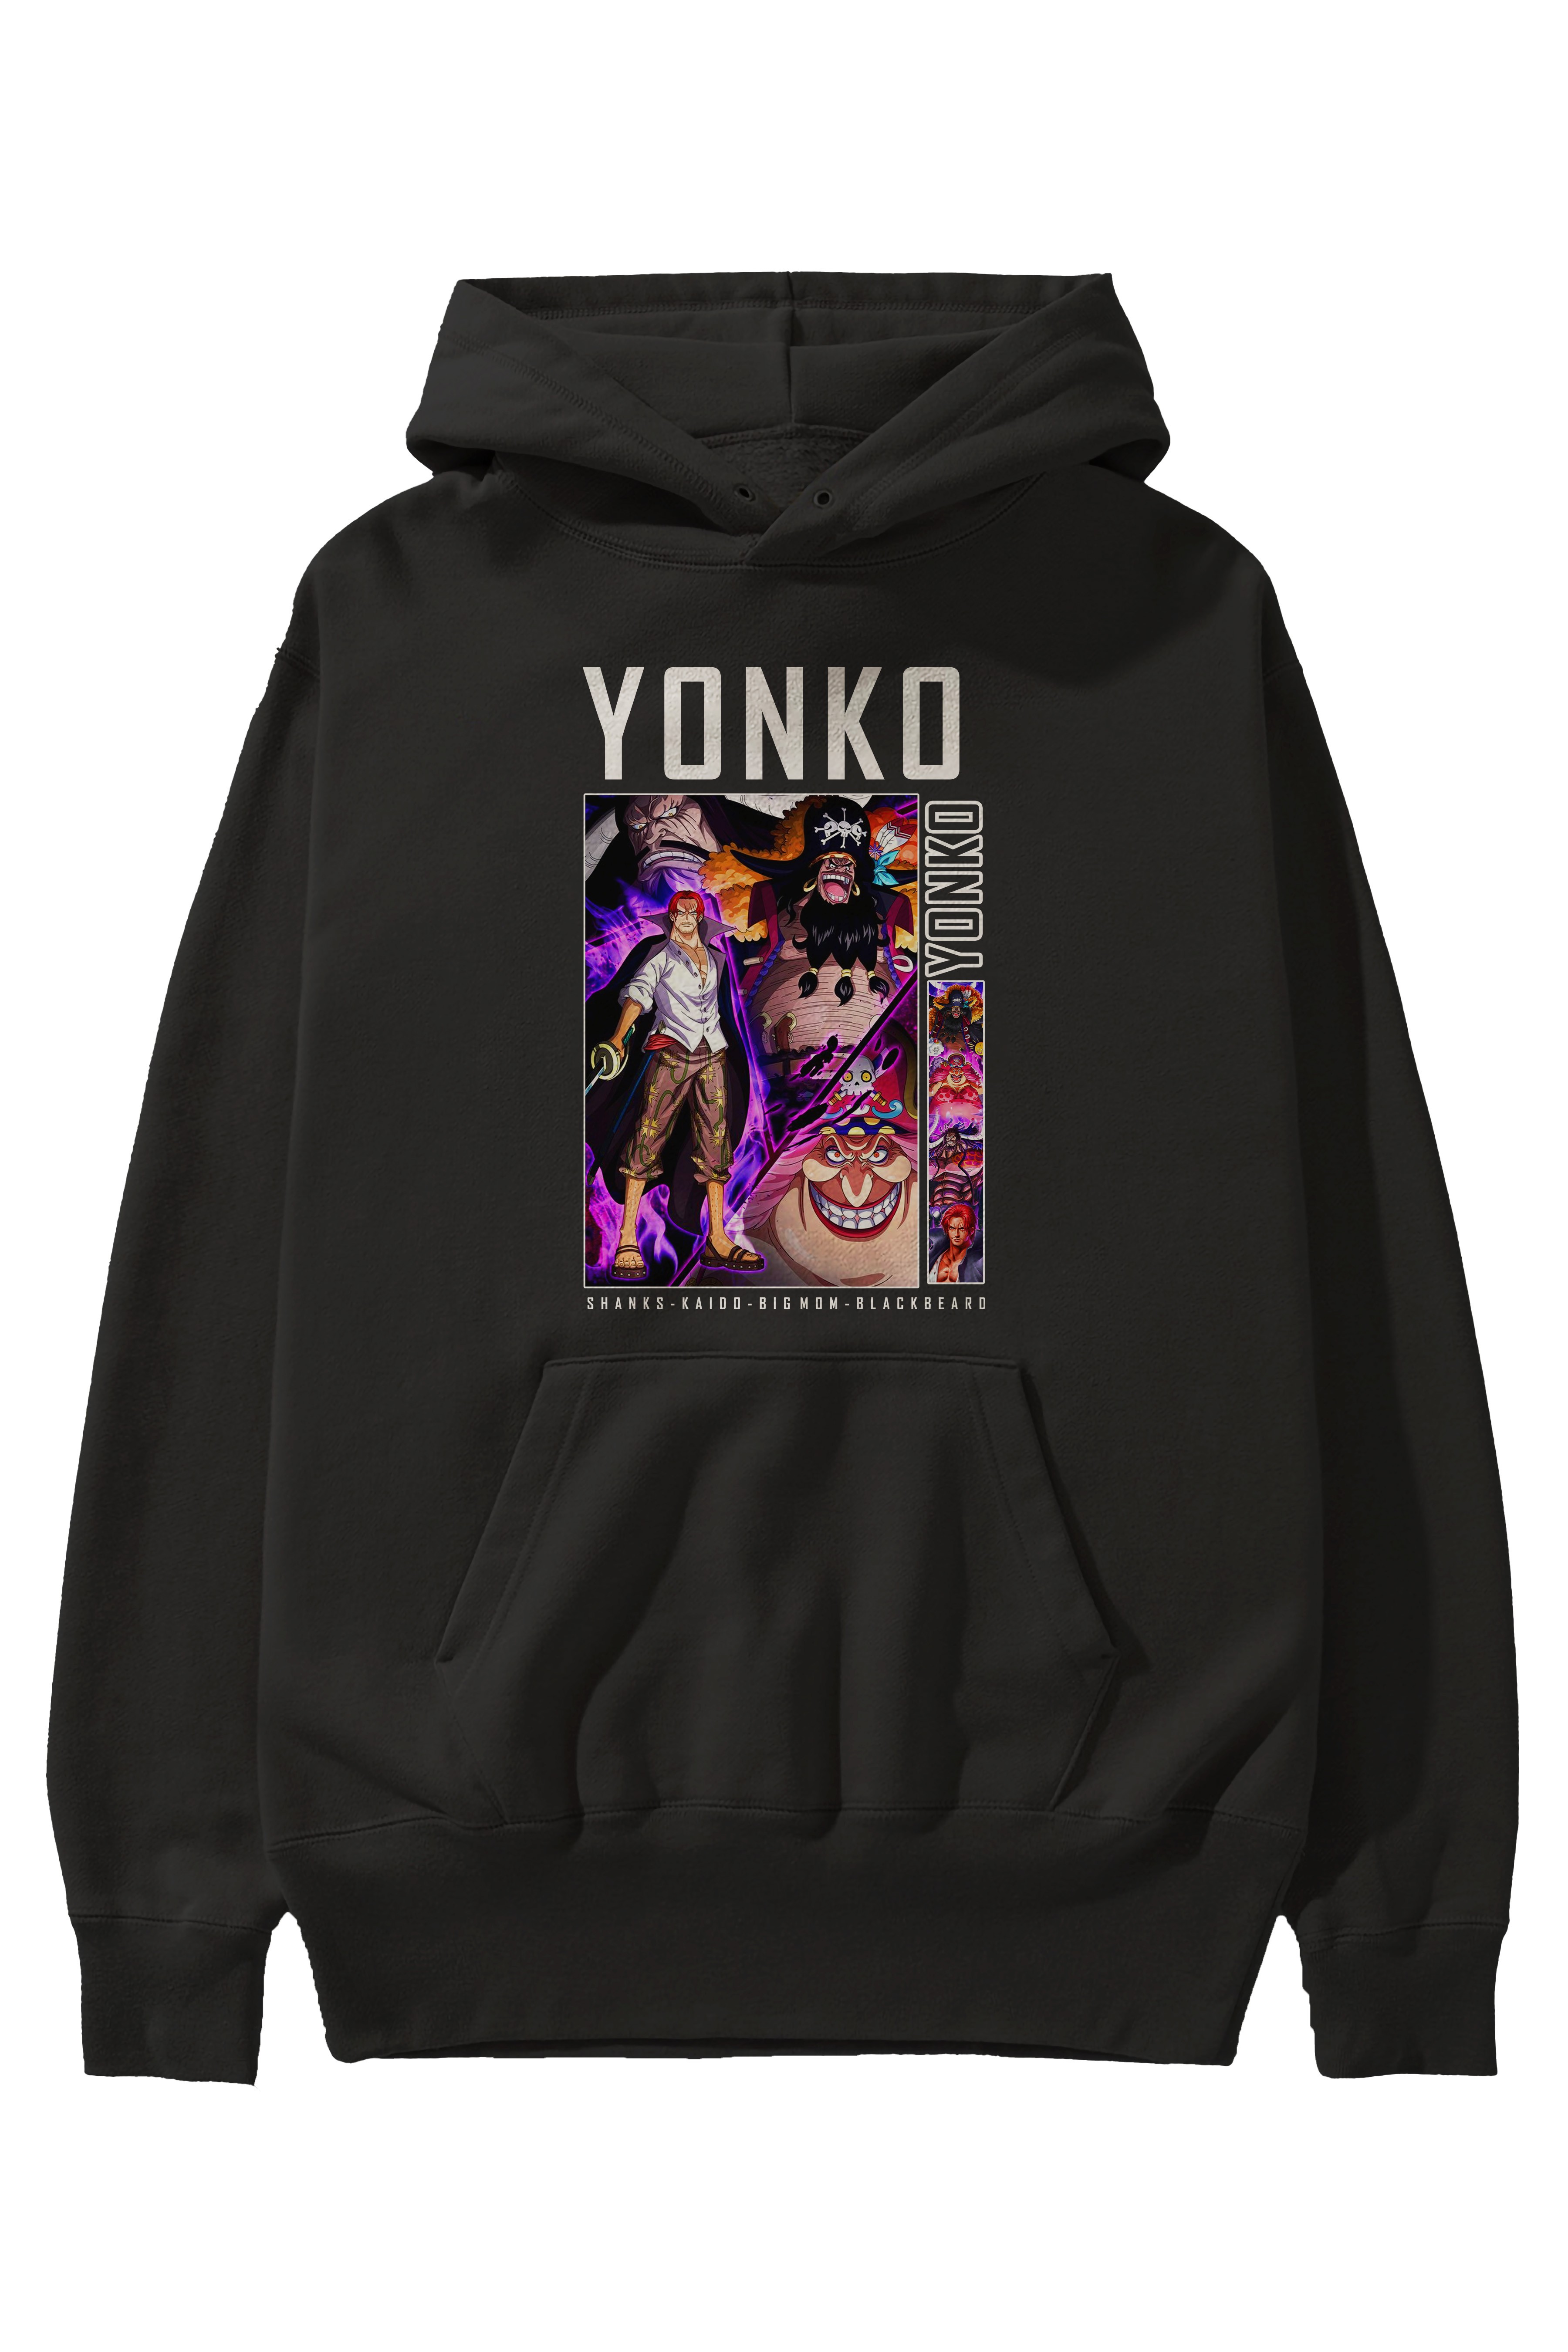 Yonko Anime Ön Baskılı Hoodie Oversize Kapüşonlu Sweatshirt Erkek Kadın Unisex